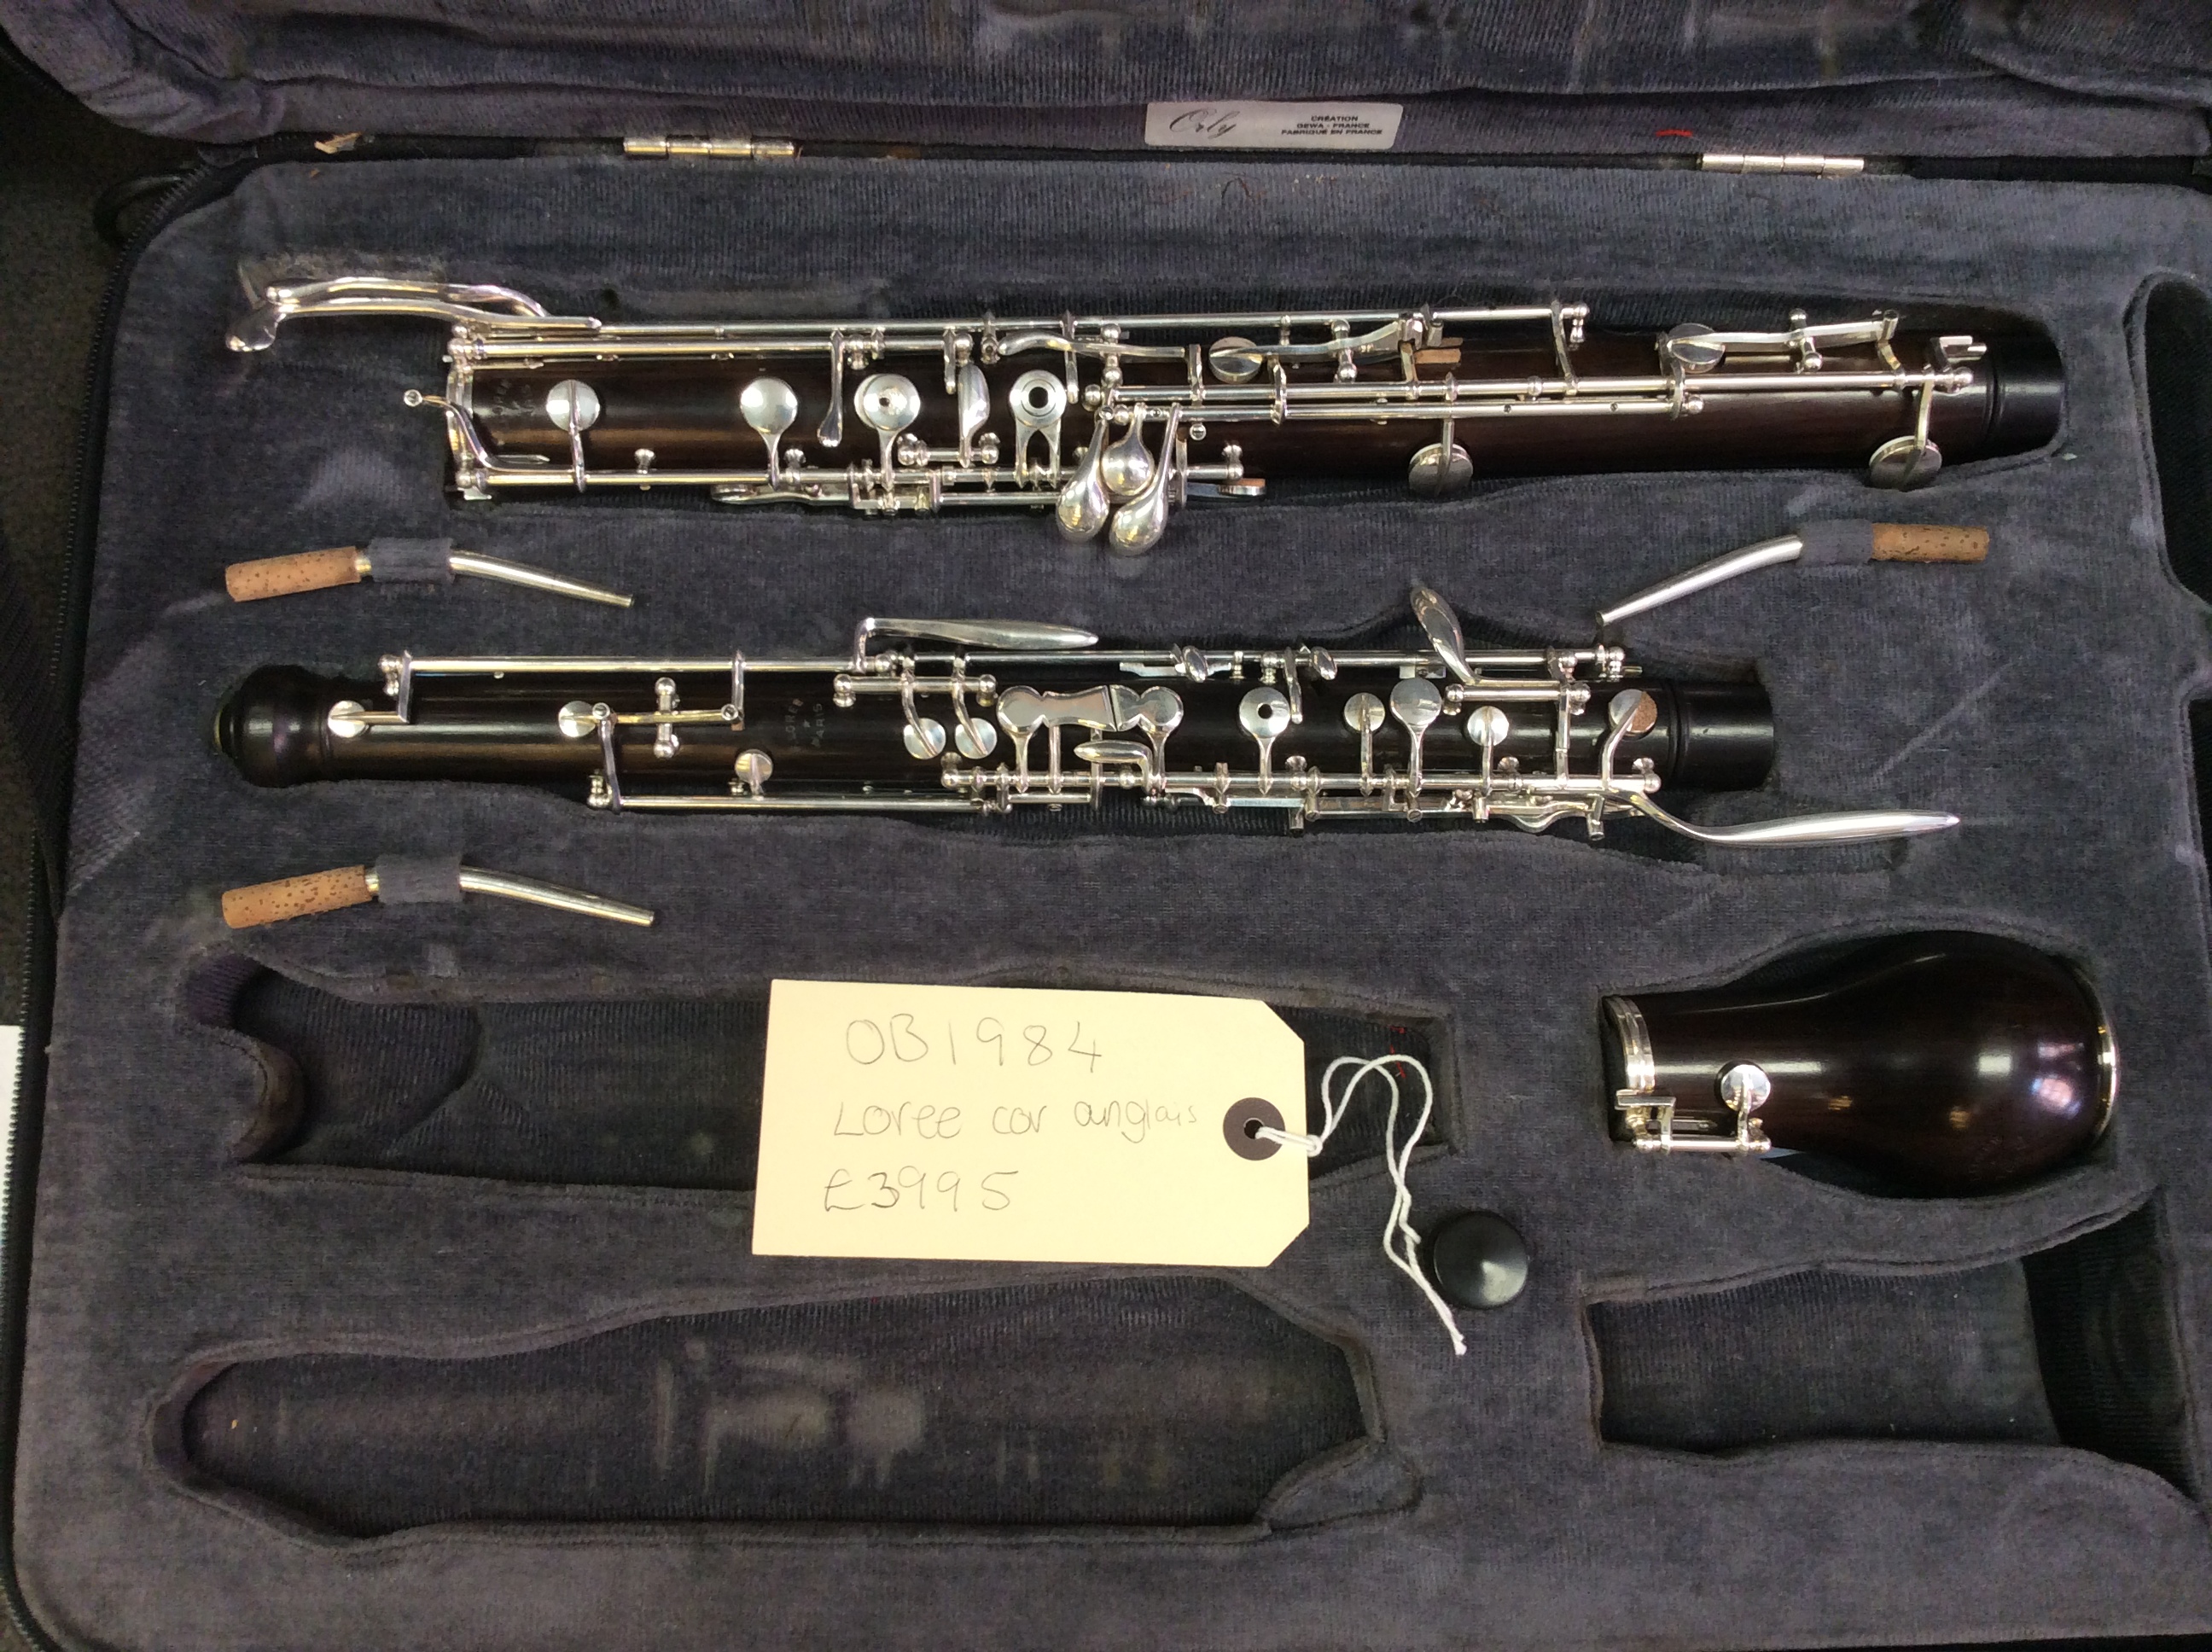 serial number loree oboe